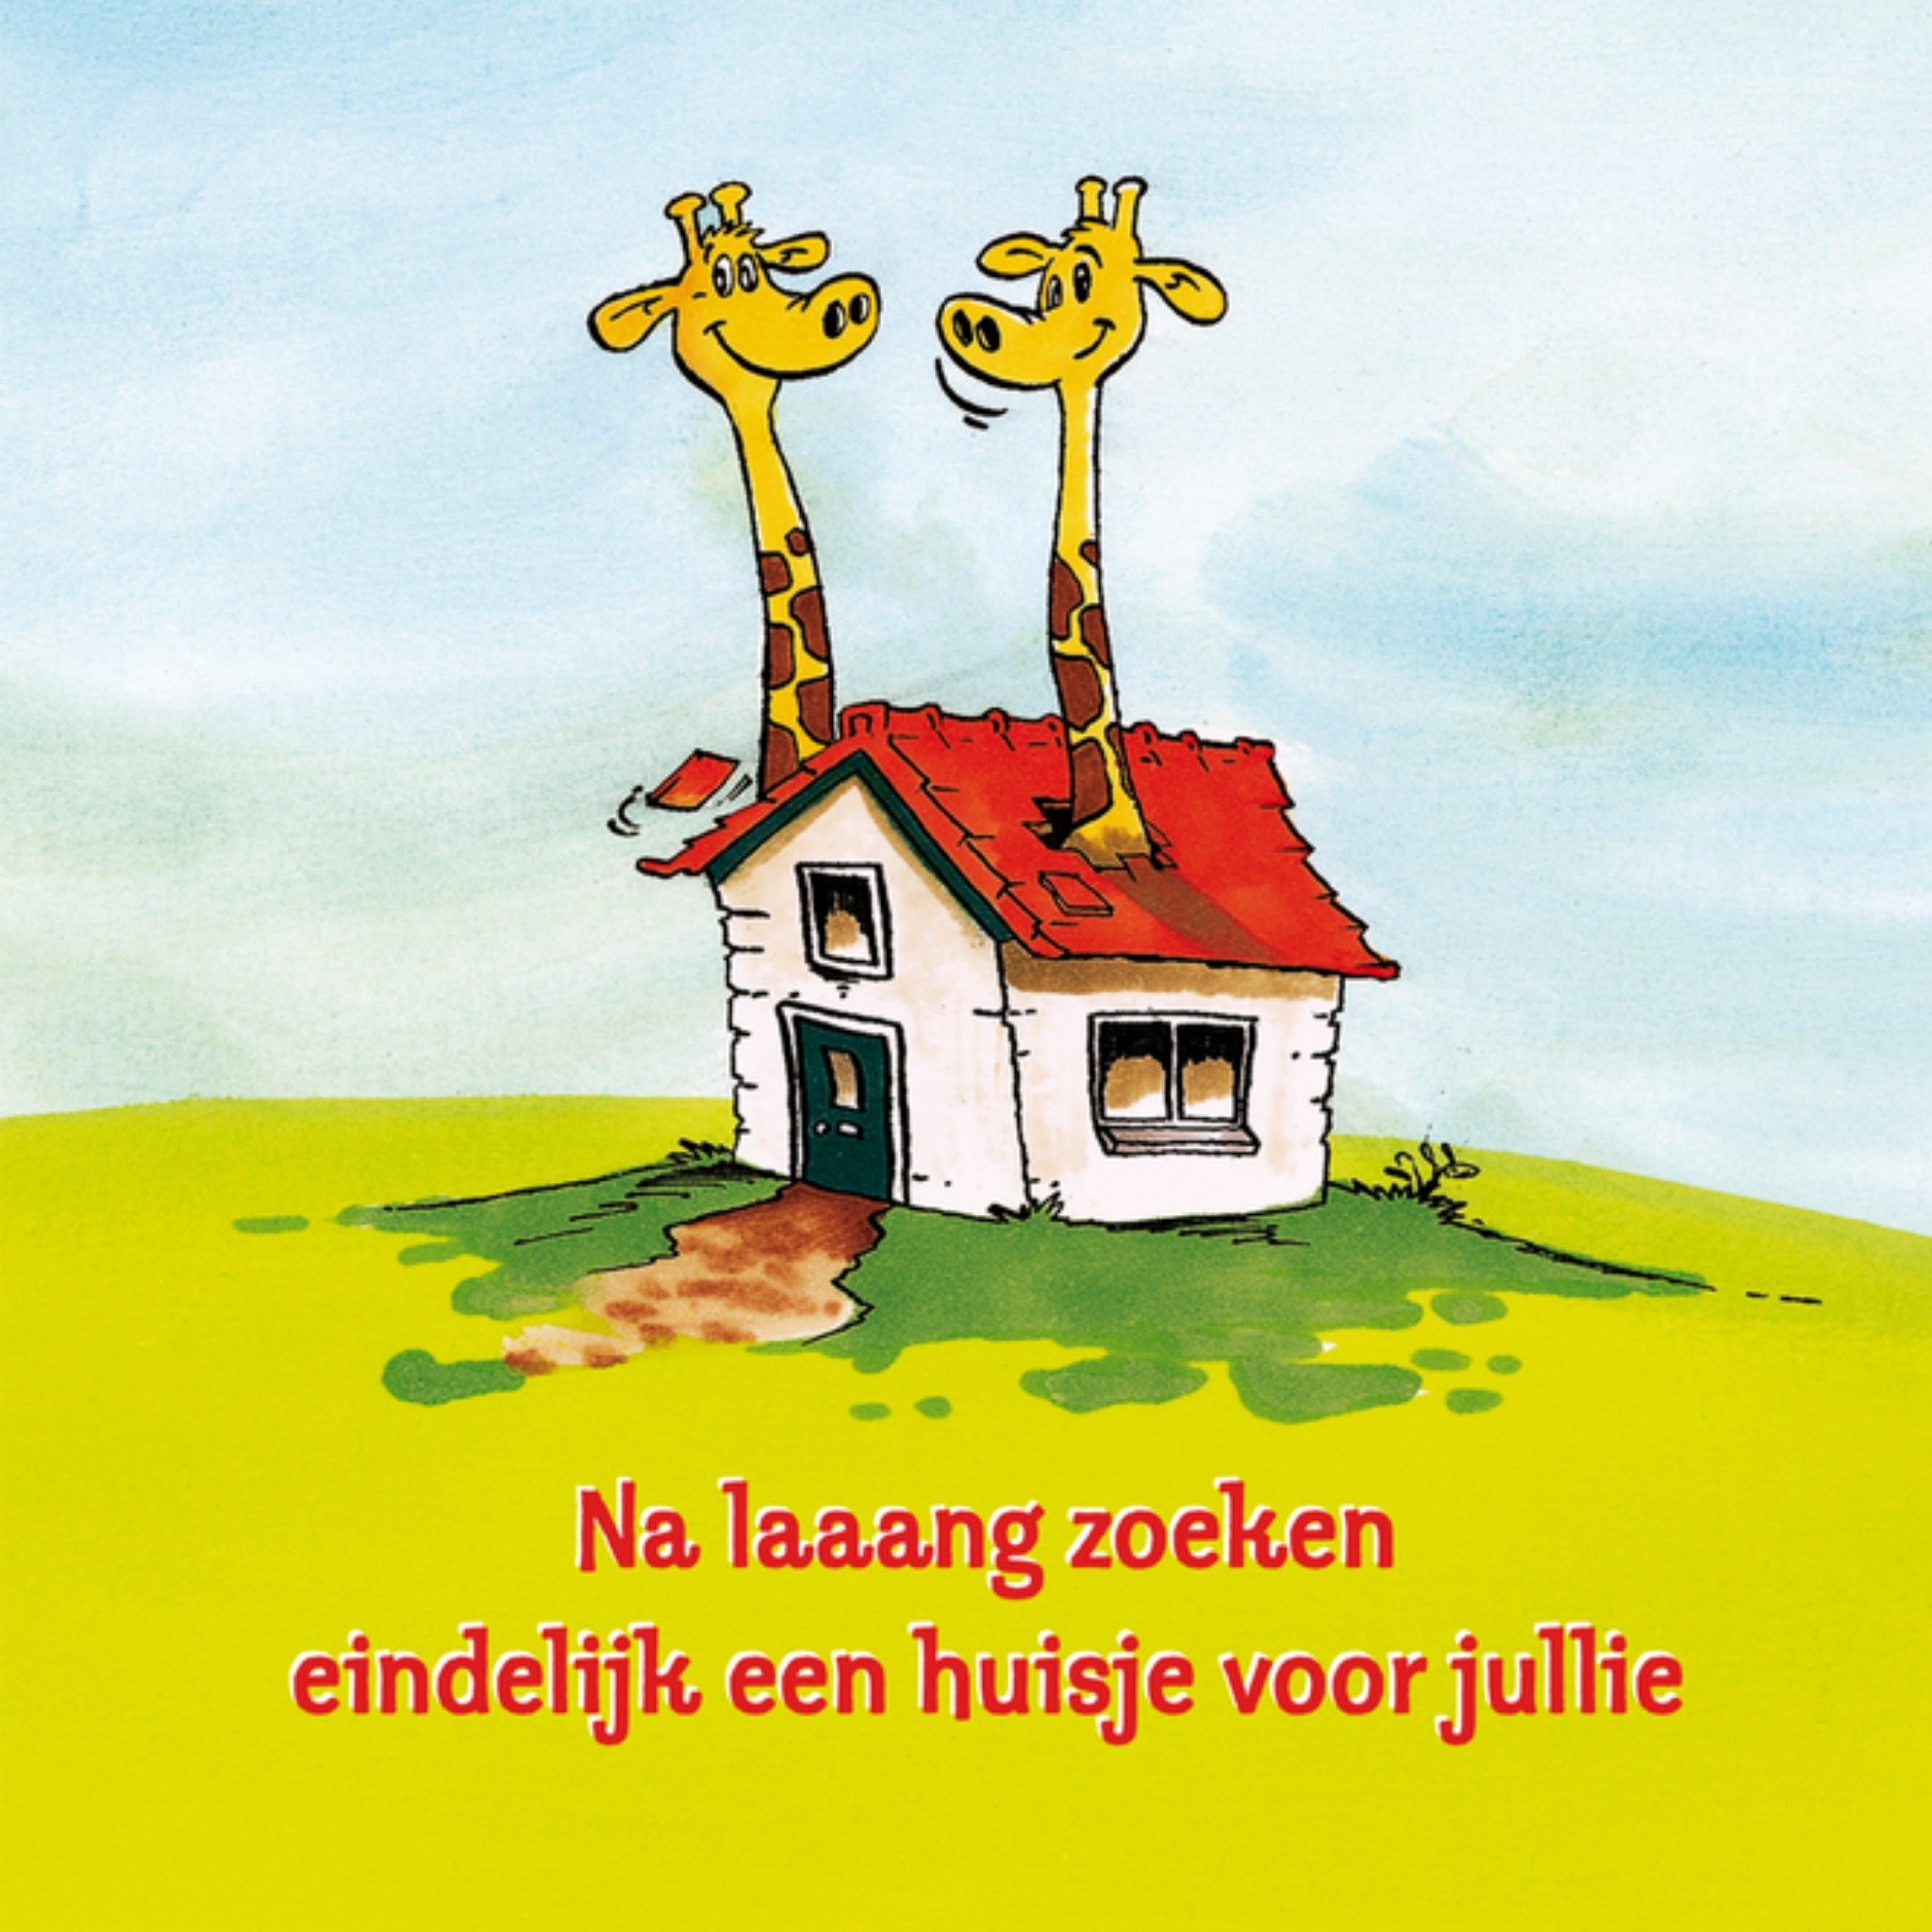 TMS - Nieuwe woning - giraffen - huis